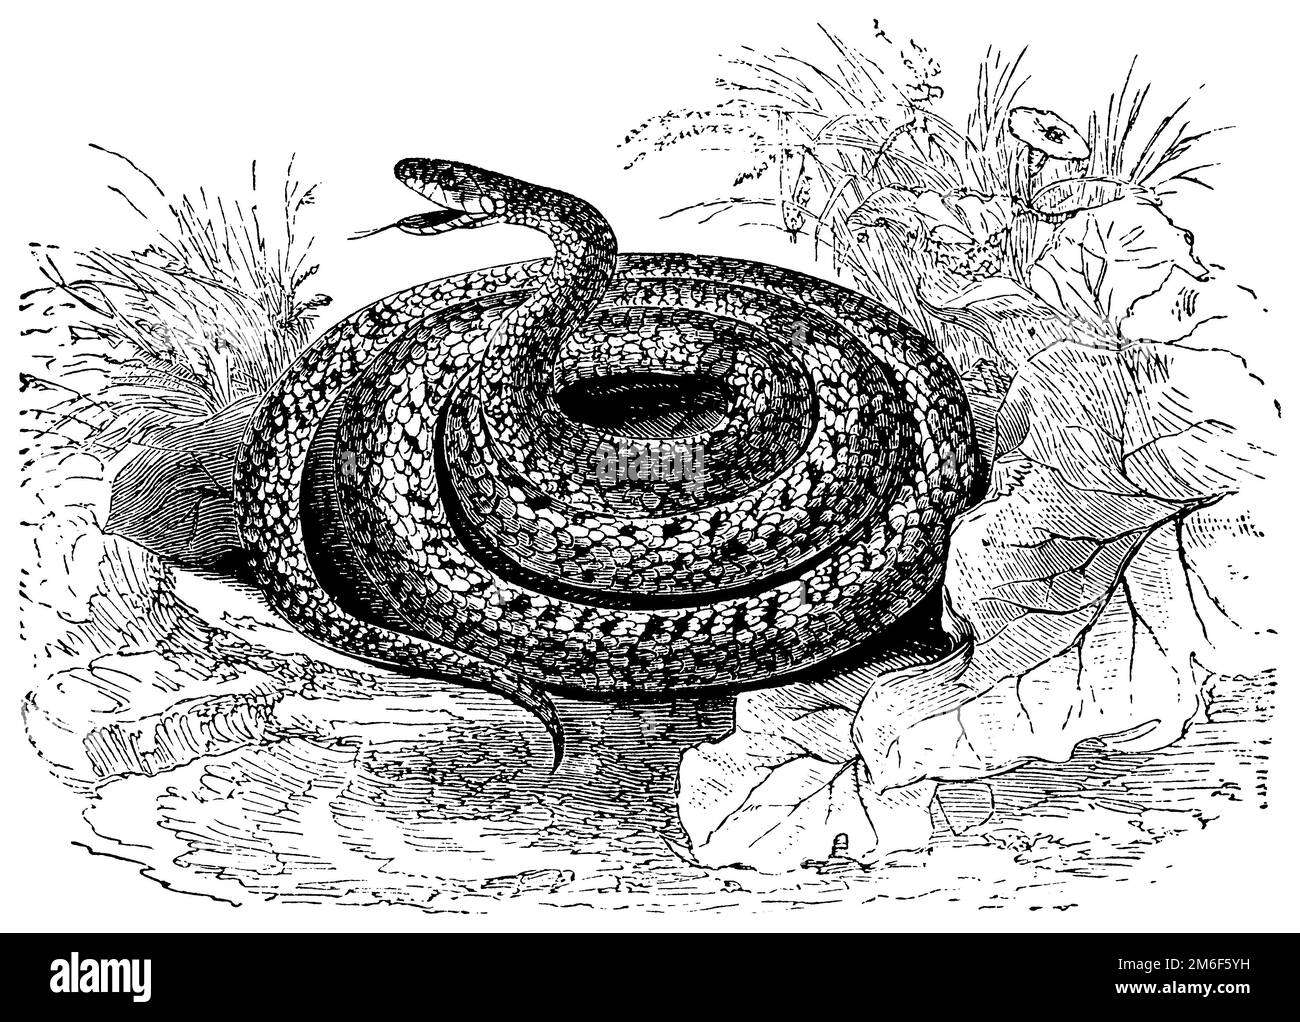 Serpent à herbe, Natrix natrix, (livre de biologie, 1903), Ringelnatter, couleuvre à collier Banque D'Images